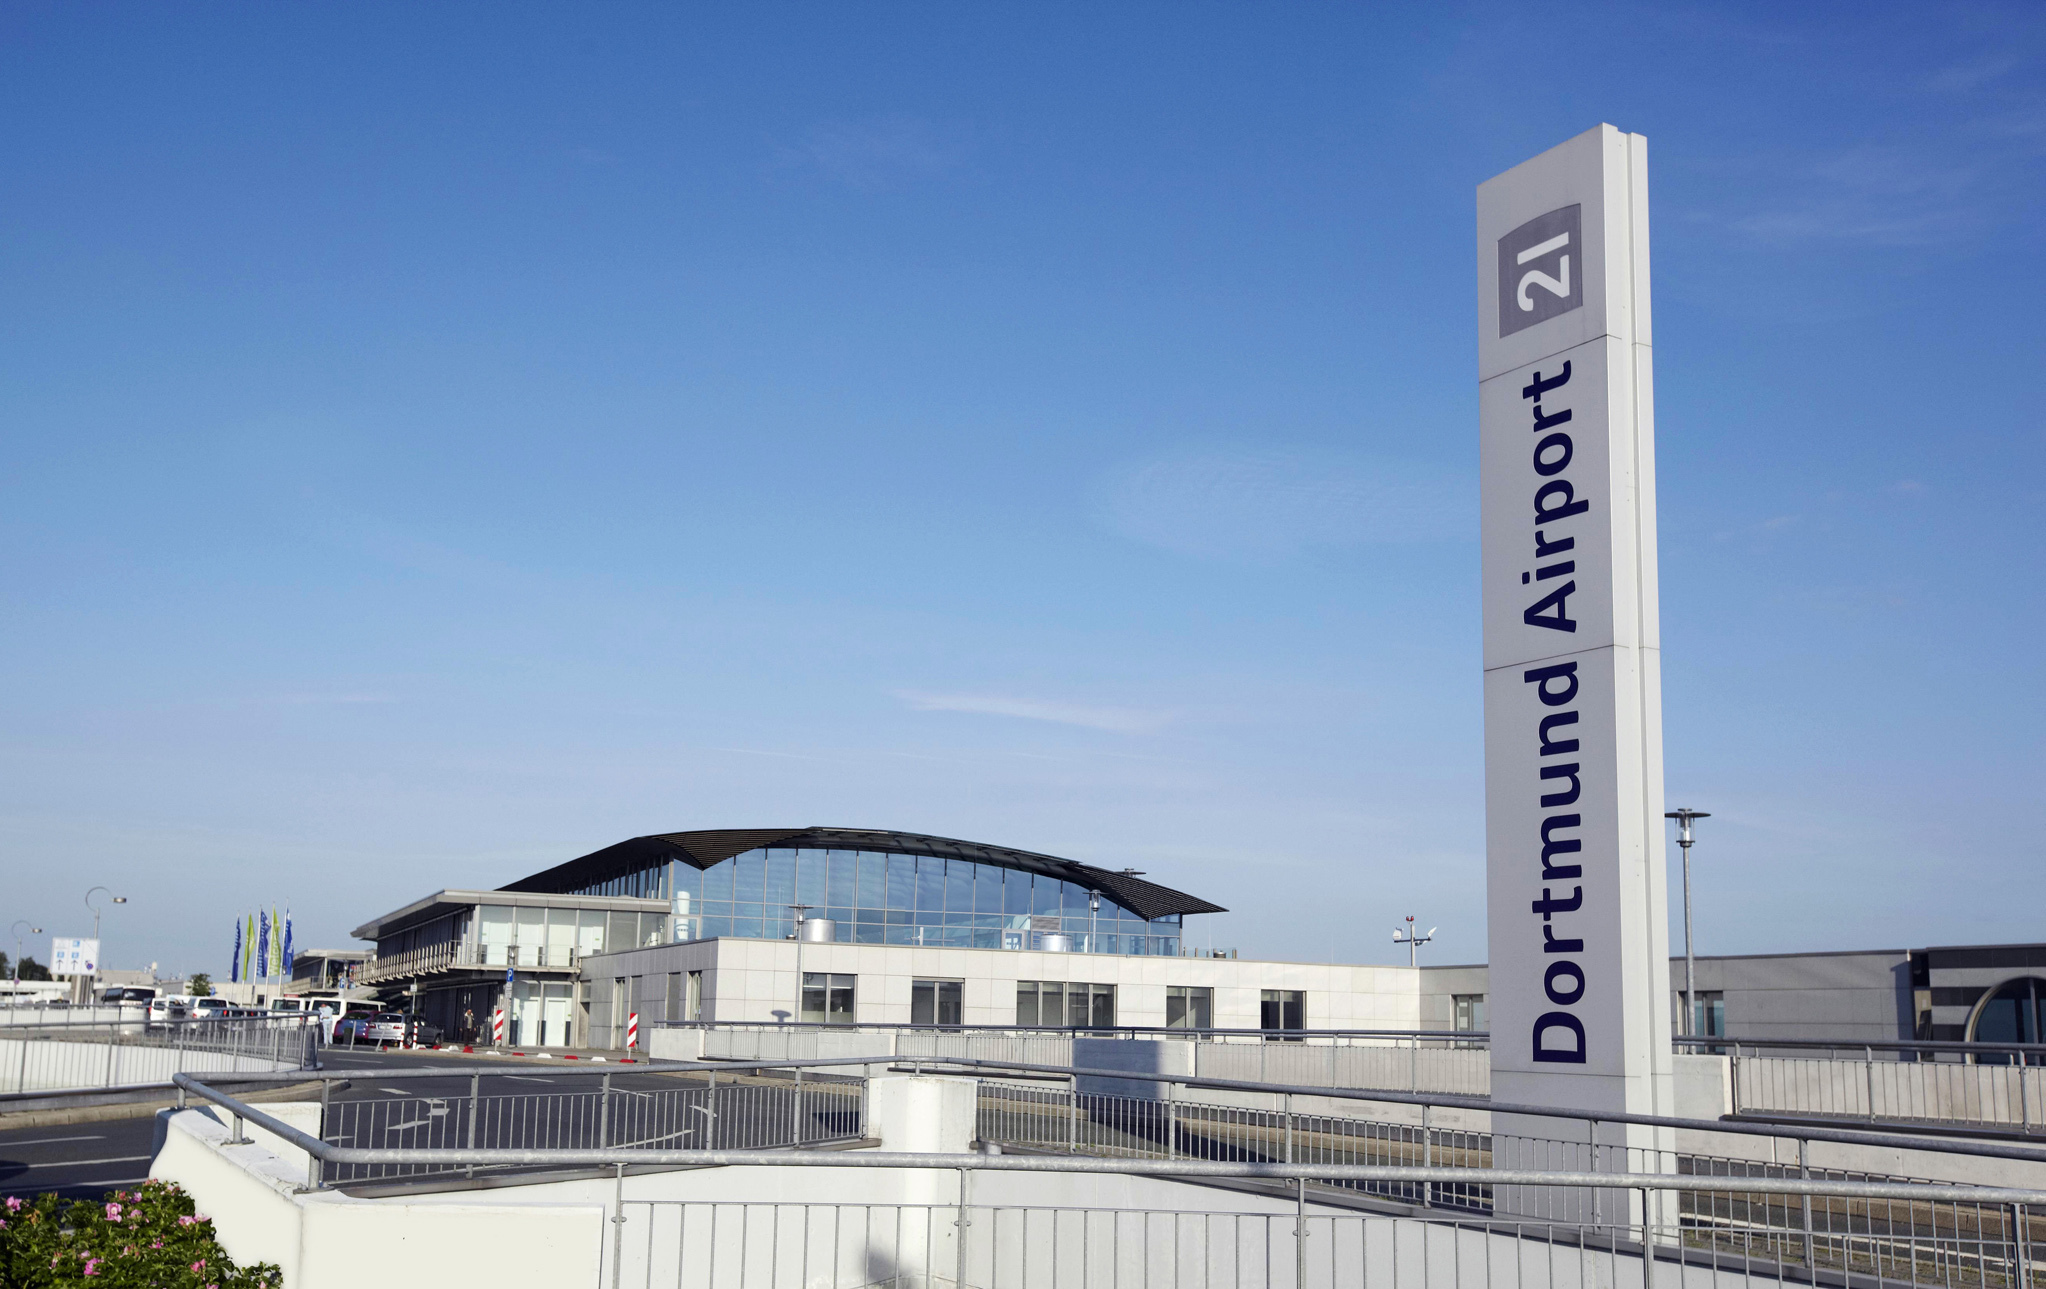 Flughafen Dortmund / Dortmund Airport 21 - ©Heinz-Jürgen Landes